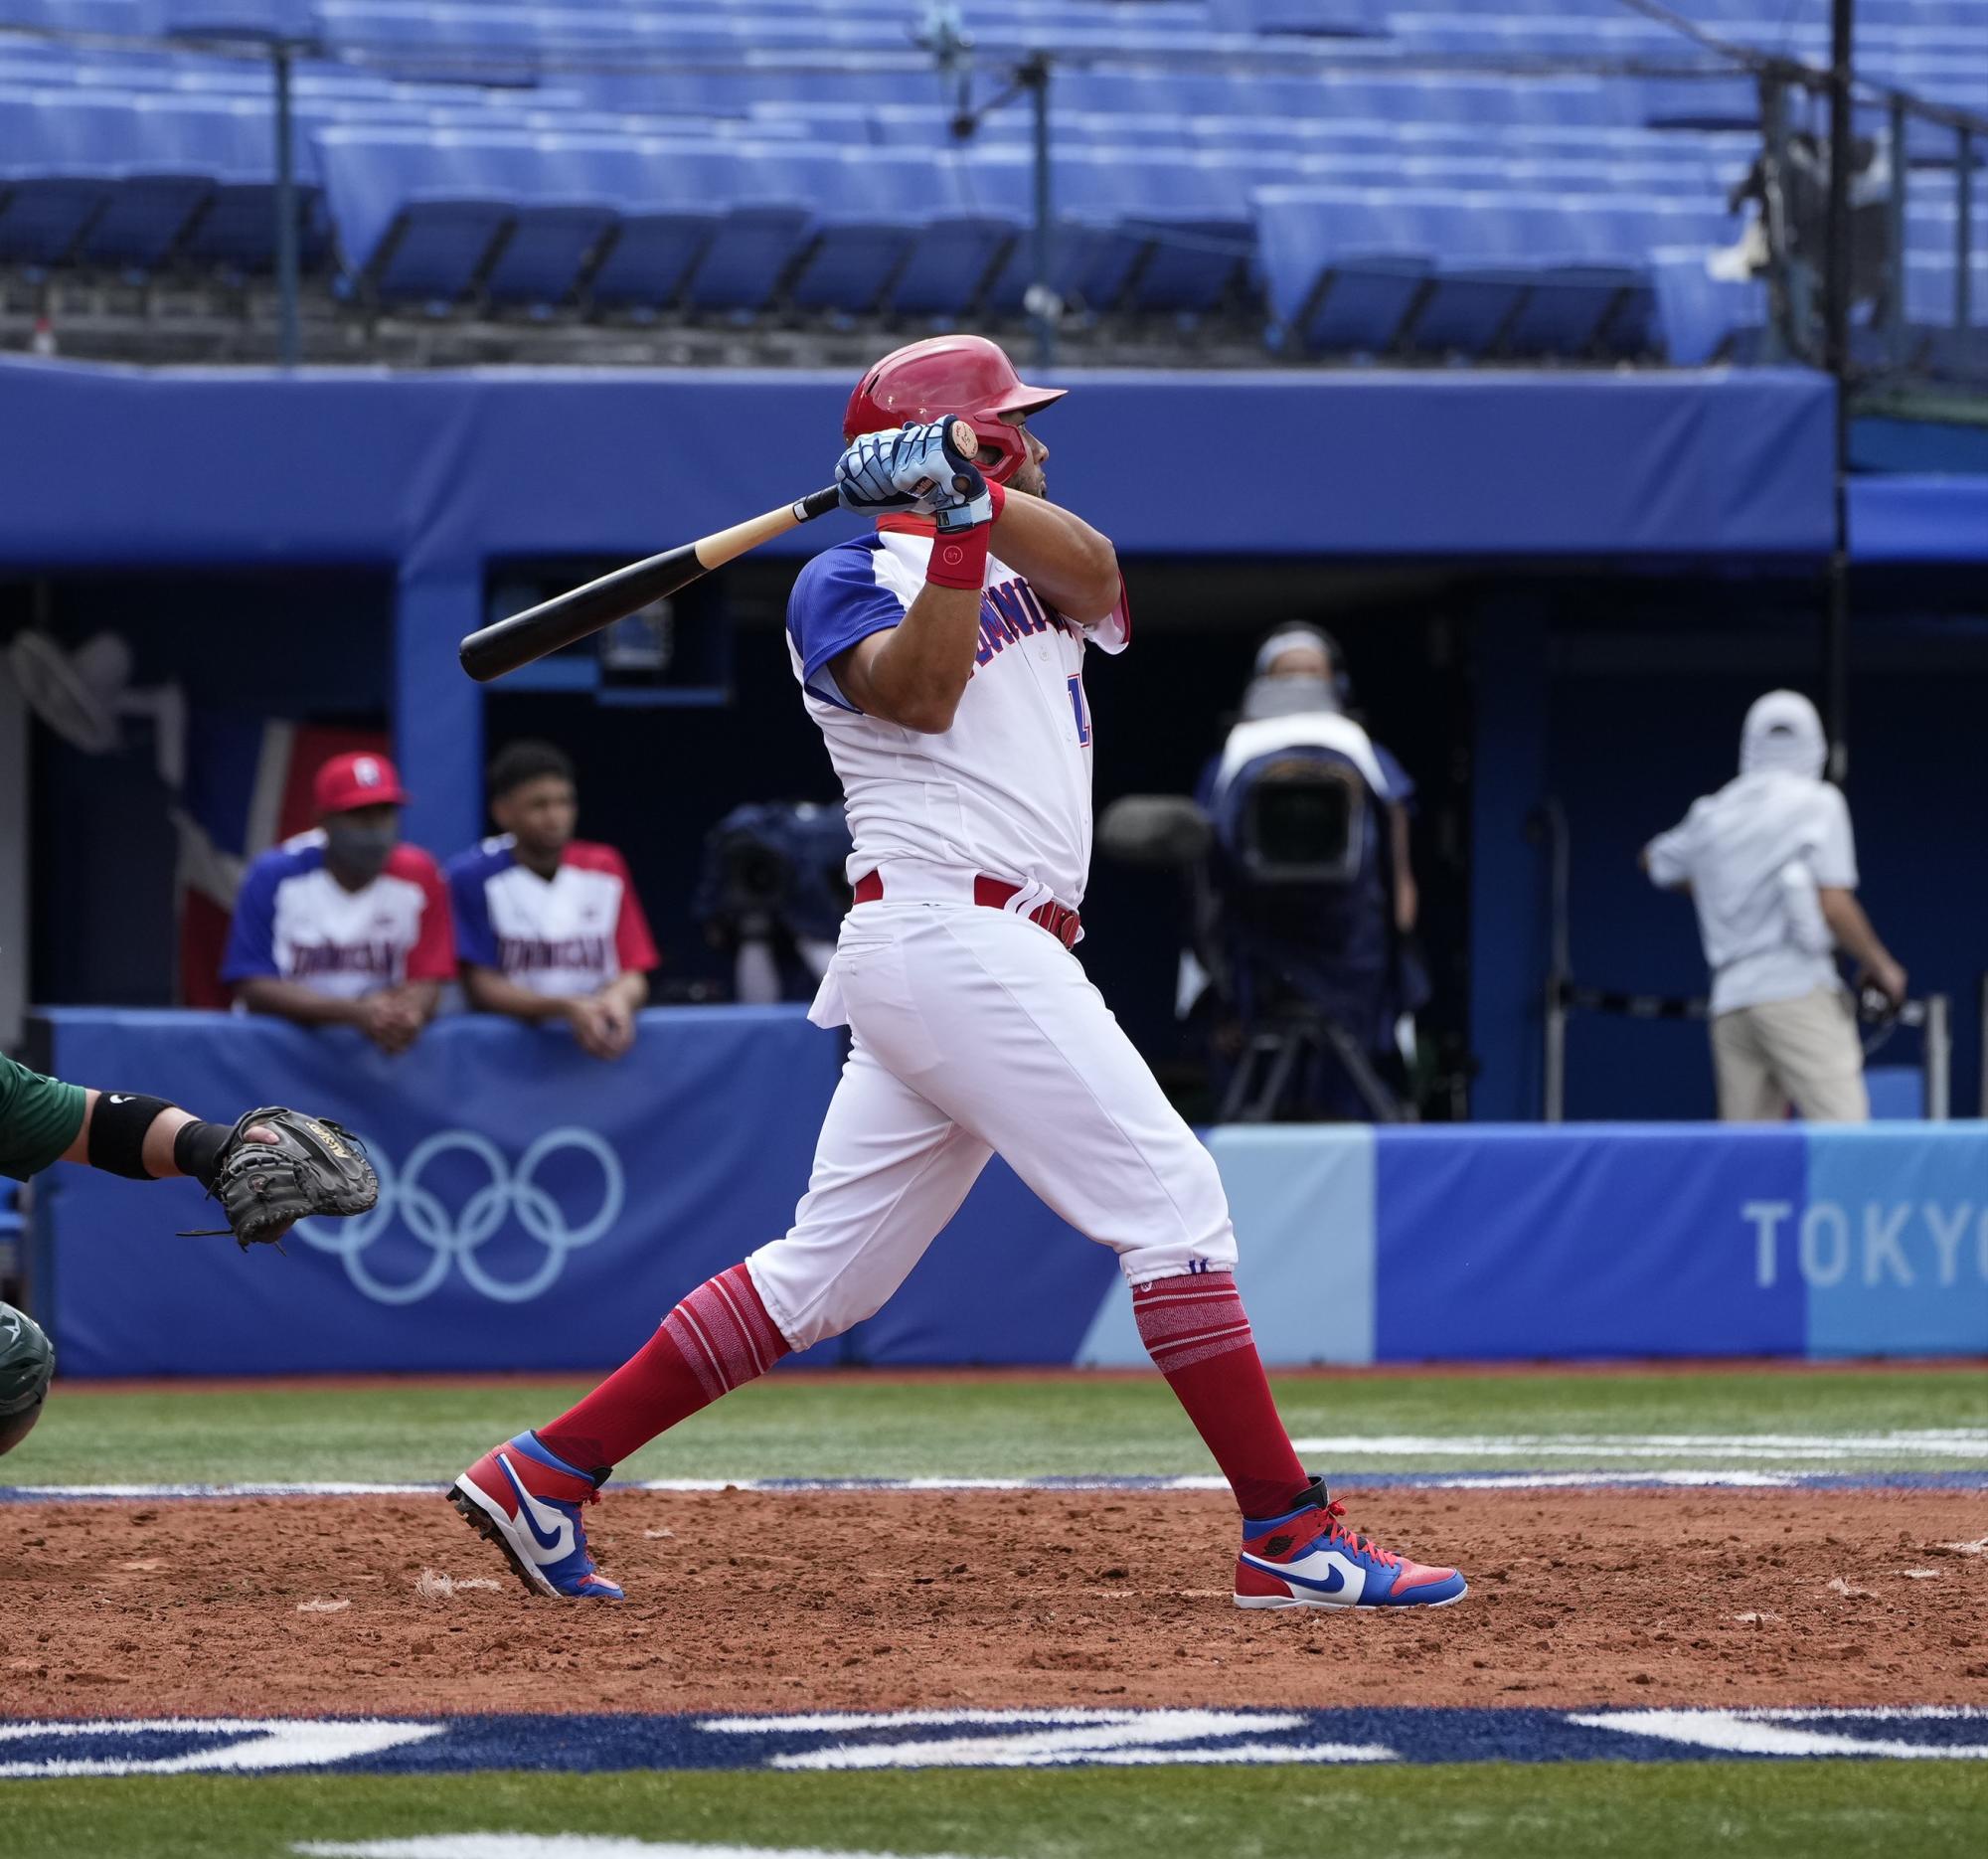 $!En duelo de lanzadores, México cae ante Dominicana en su presentación en Tokio 2020